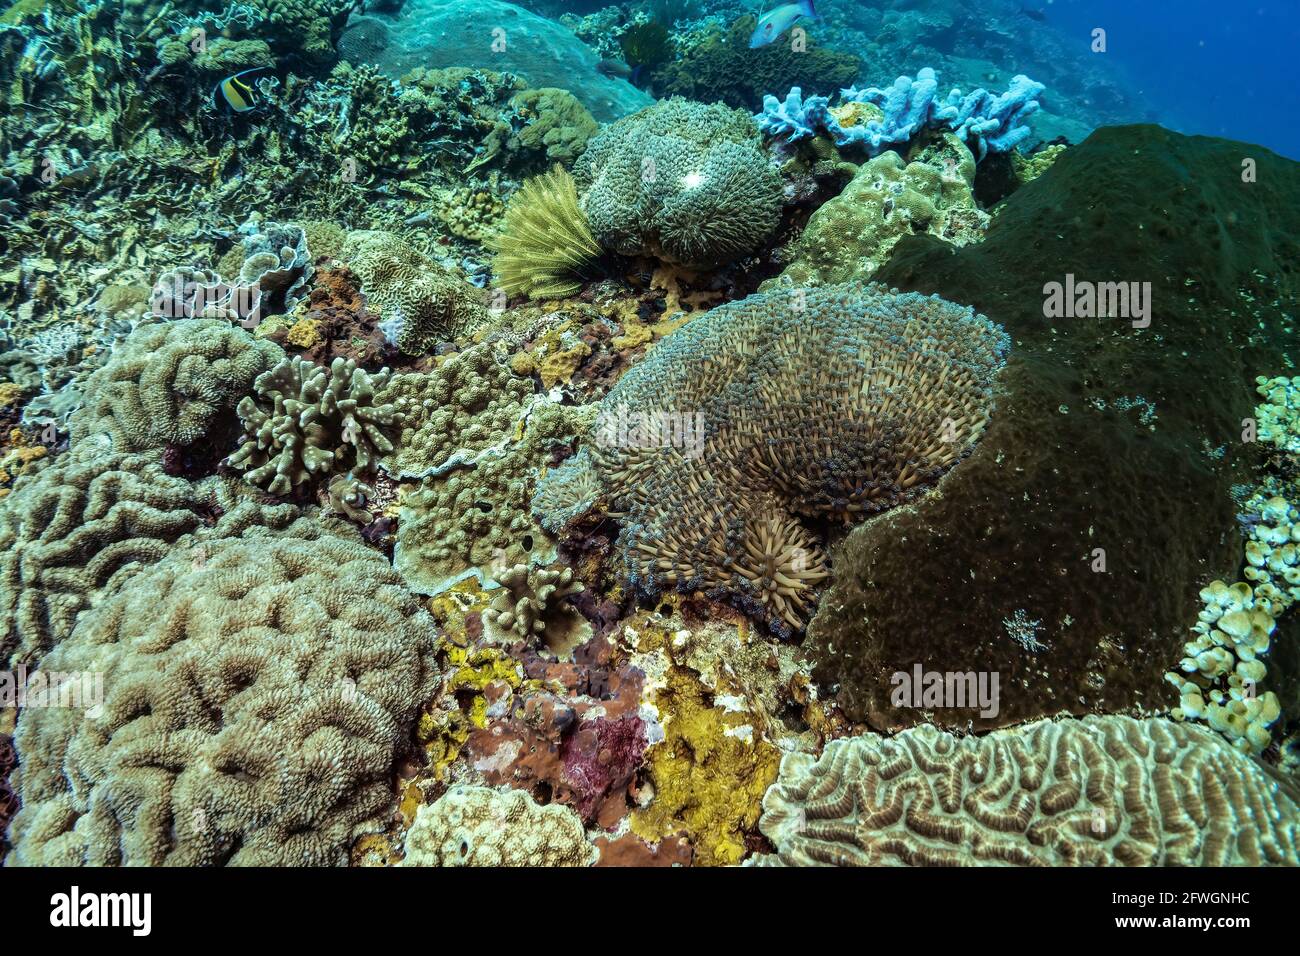 Wunderschöner Panoramablick über das tropische Riff in Indonesien, das von vielen verschiedenen Korallenarten bevölkert ist, sowohl weich als auch hart. Weiches blaues Unterwasserlicht. Pictu Stockfoto